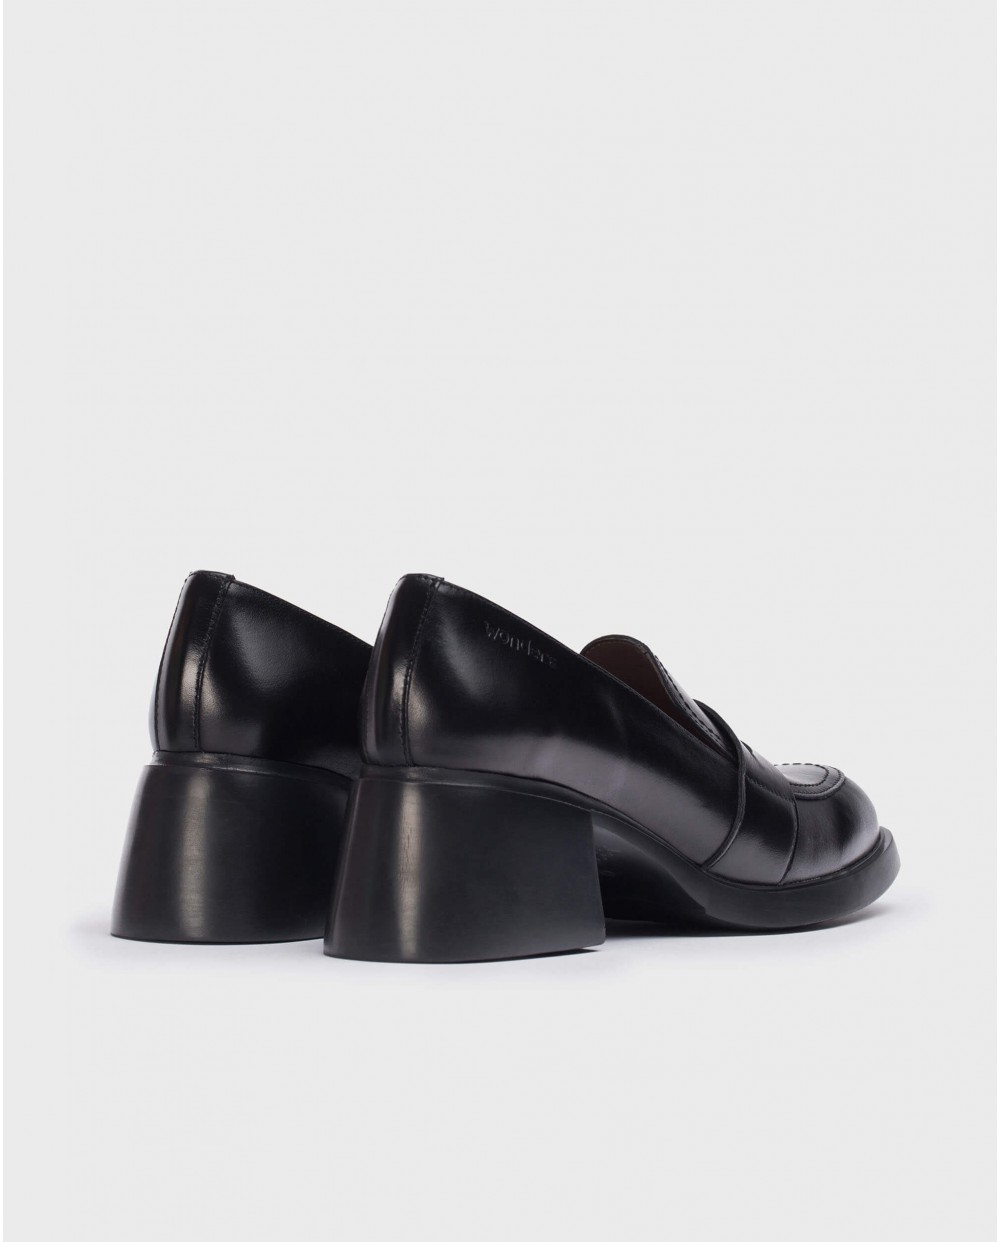 Wonders-Heels-Black shoes Durham